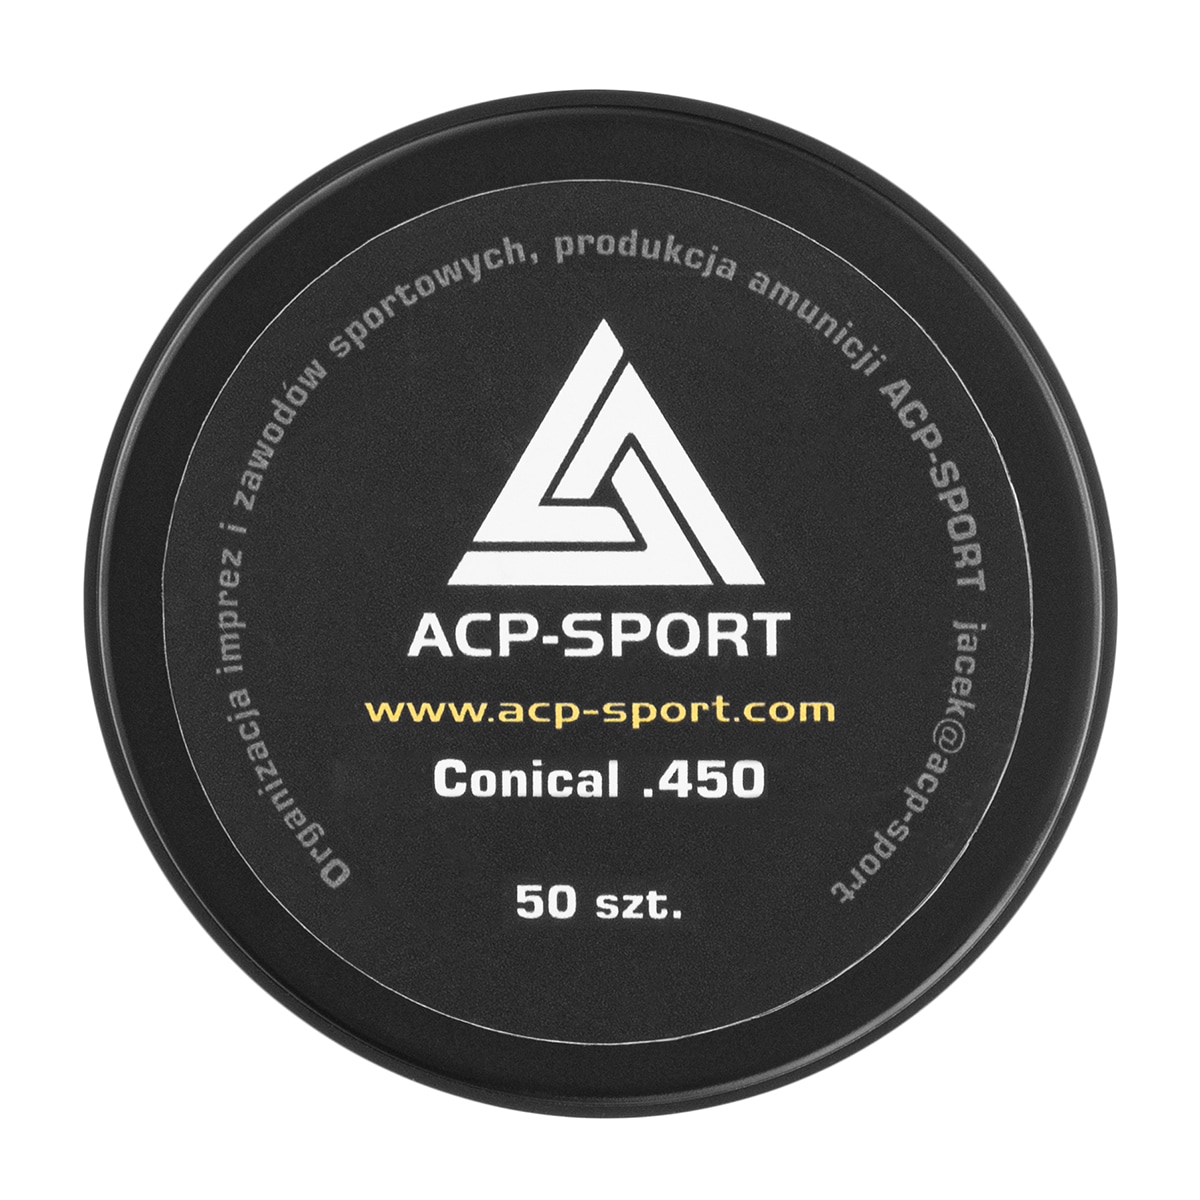 Pociski ołowiane ACP-Sport Conical kaliber .45 - 50 szt.